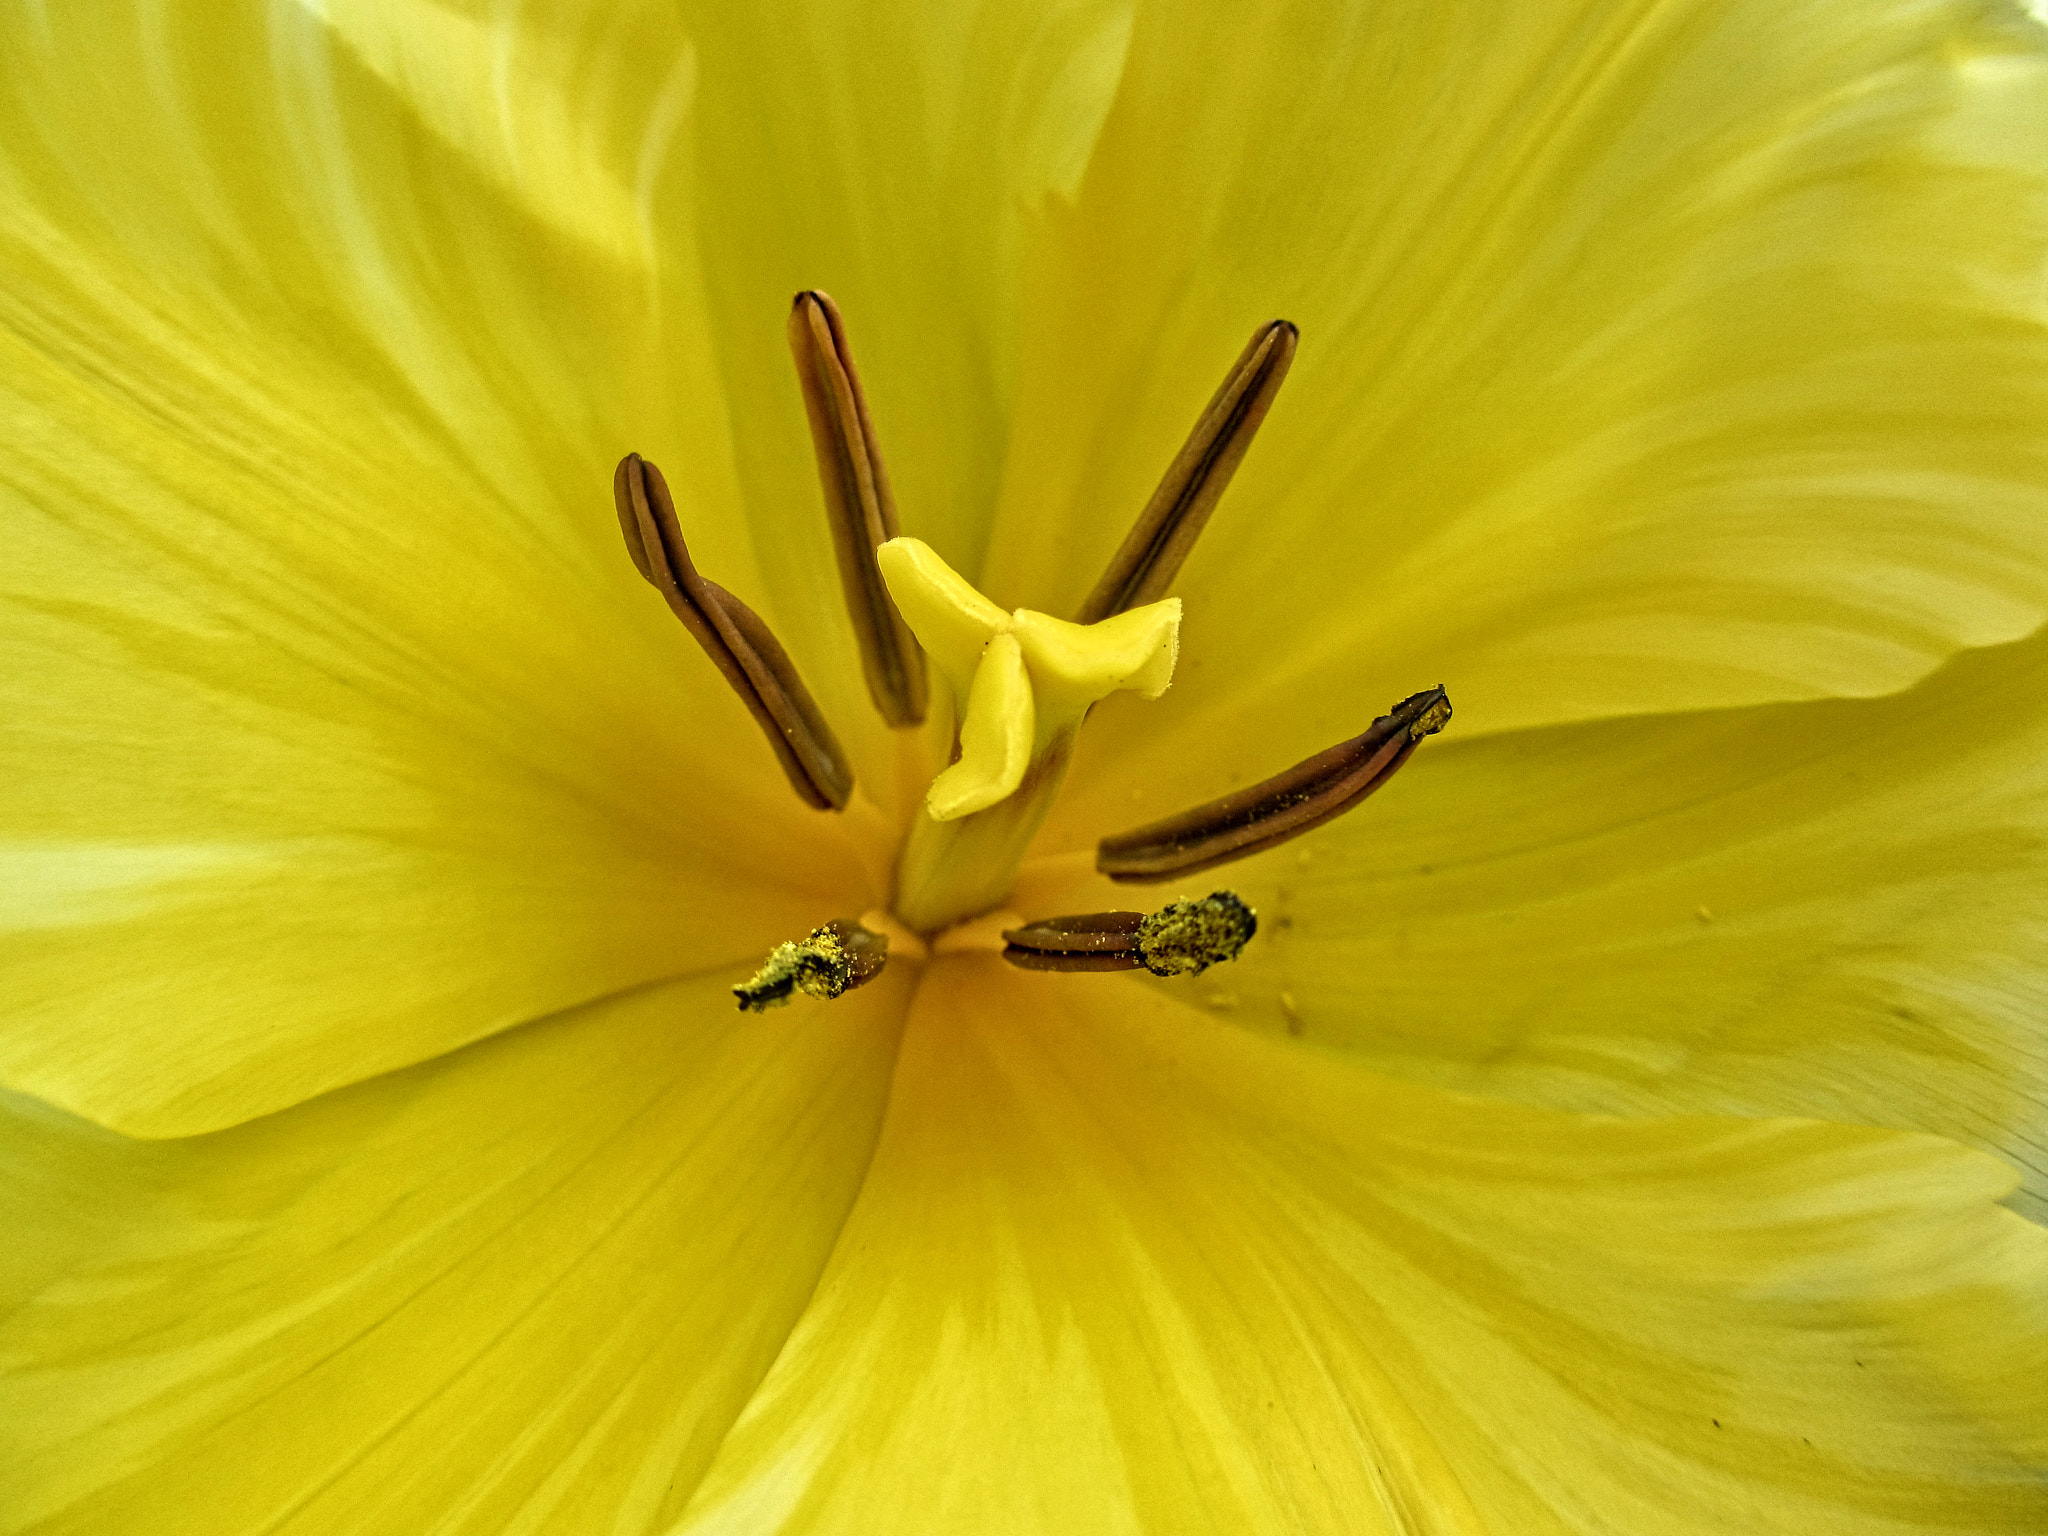 Canon PowerShot ELPH 310 HS (IXUS 230 HS / IXY 600F) sample photo. Oli tulip close up photography